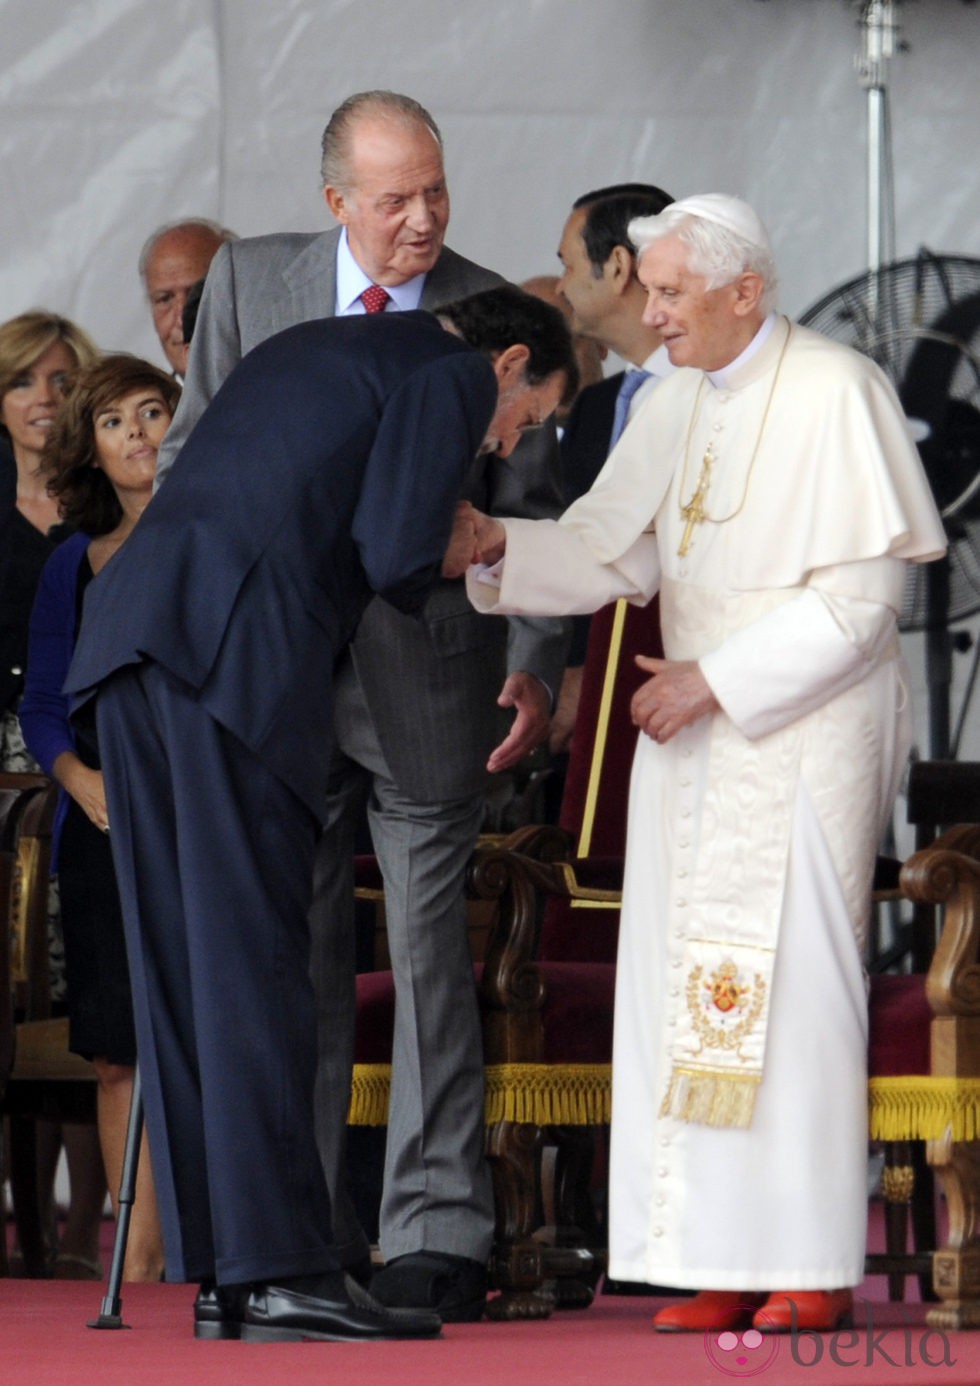 Mariano Rajoy se inclina ante el Papa Benedicto XVI en Madrid-Barajas